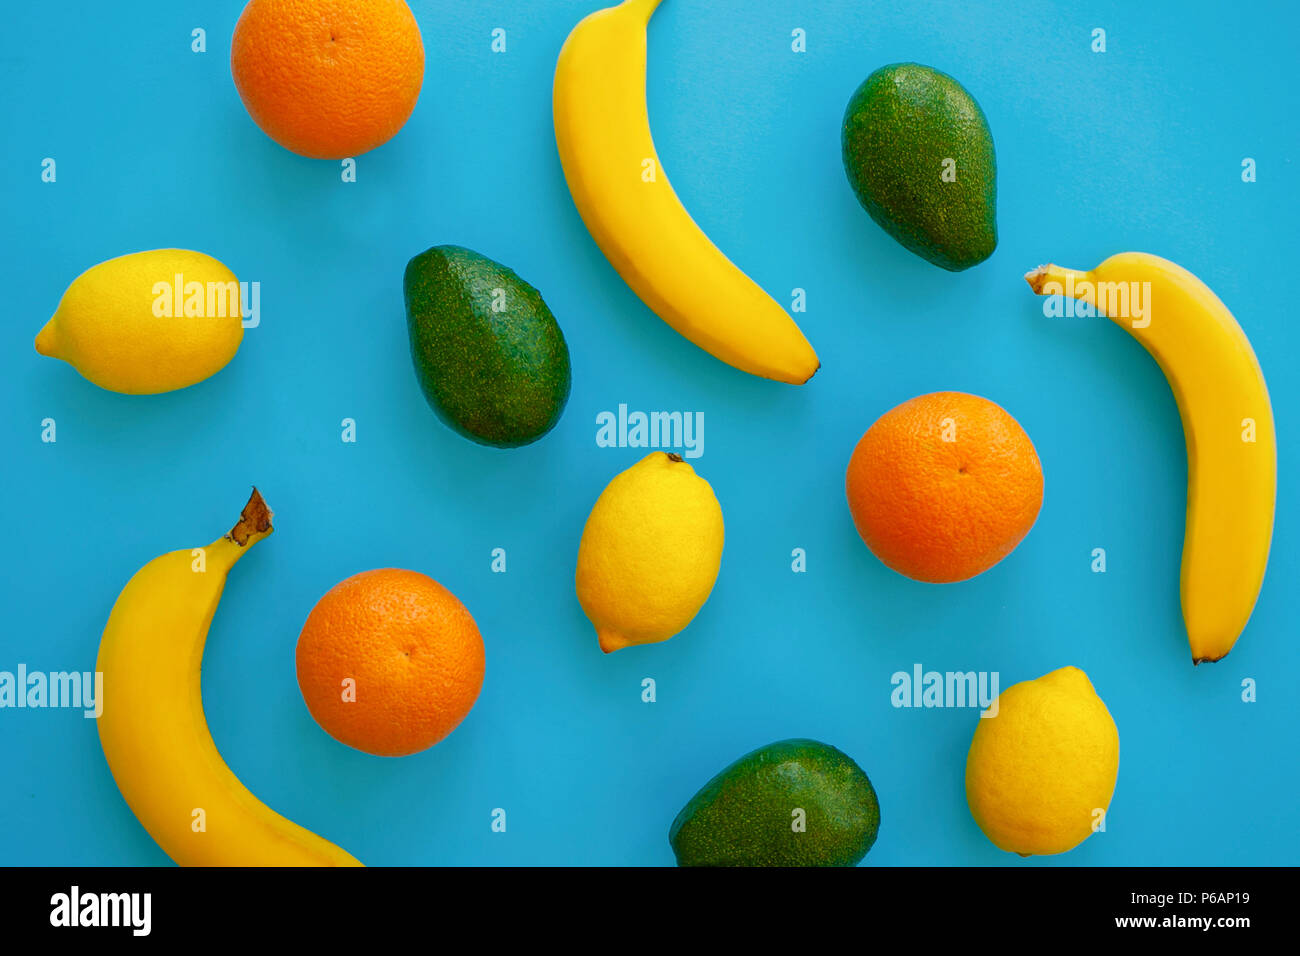 Früchte trendige Flach. Bananen, Orangen-, Avocado- und Zitronen auf hellen blauen Papier. Moderne Sommer Bild Konzept. multi Frucht Flach, saftige Vitamin ab Stockfoto